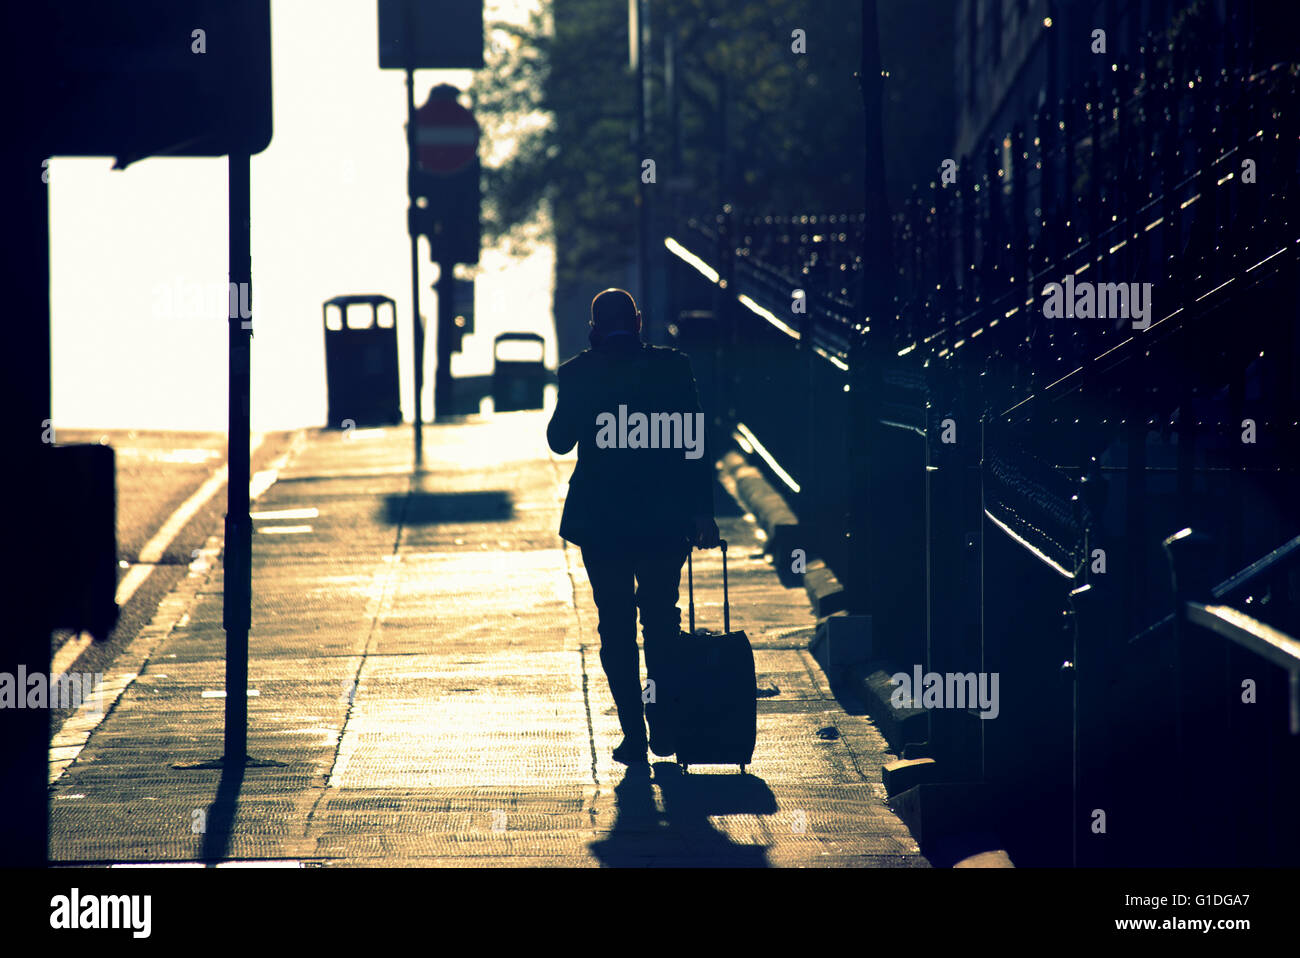 Silhouette des Mannes auf Handy in Glasgow Straße mit Straße Contre-Jour Hintergrundbeleuchtung in Glasgow, Schottland, Großbritannien. Stockfoto